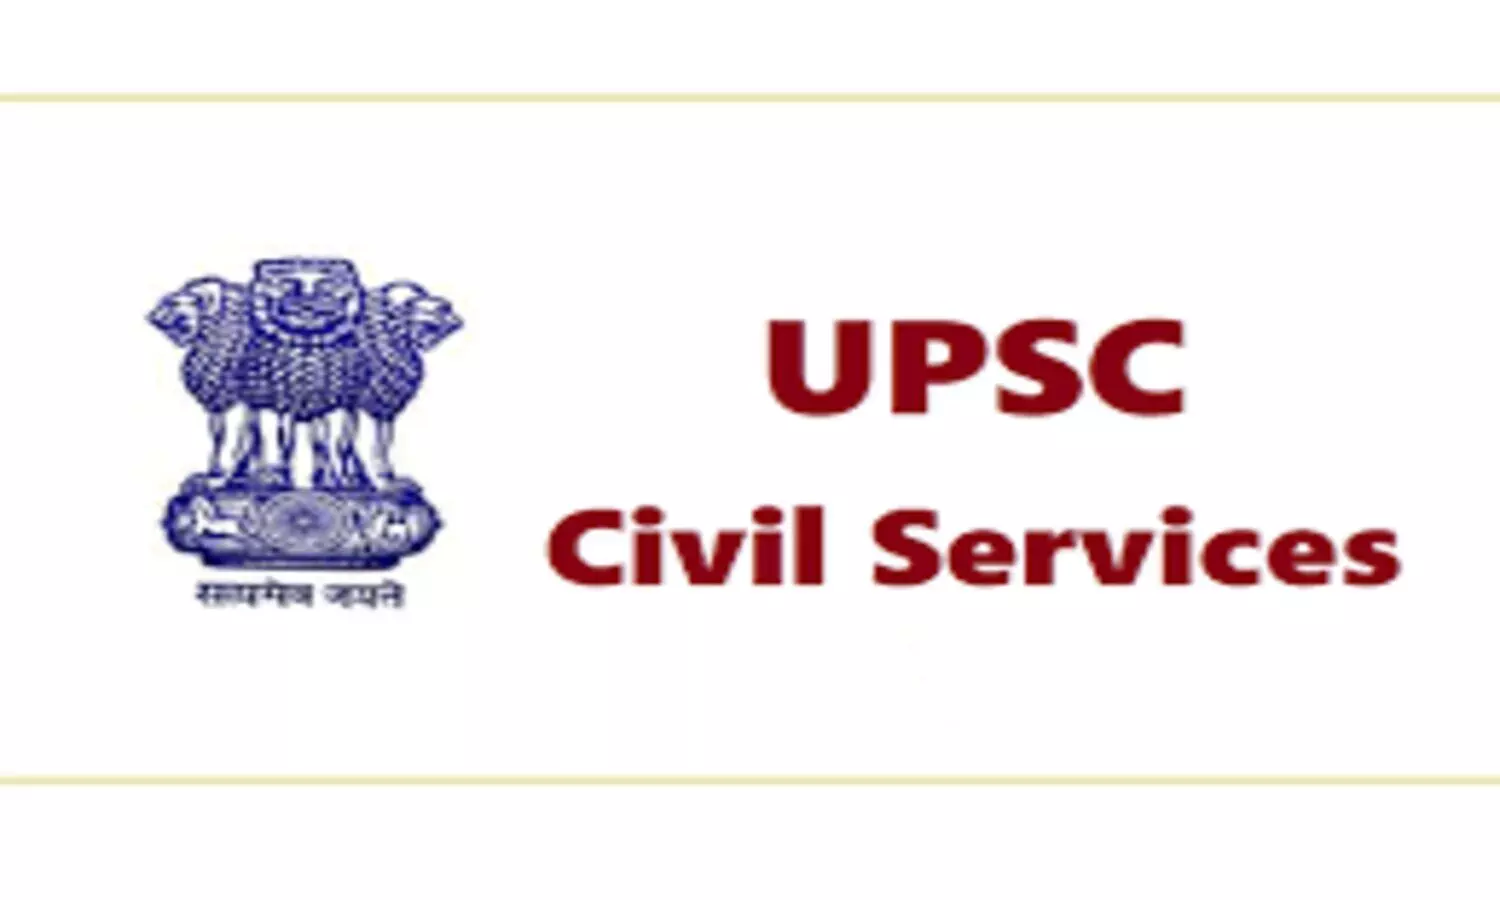 UPSC Exams 2020: कोरोना के कारण सिविल सेवा की भर्तियां स्थगित, टले ये इंटरव्यू